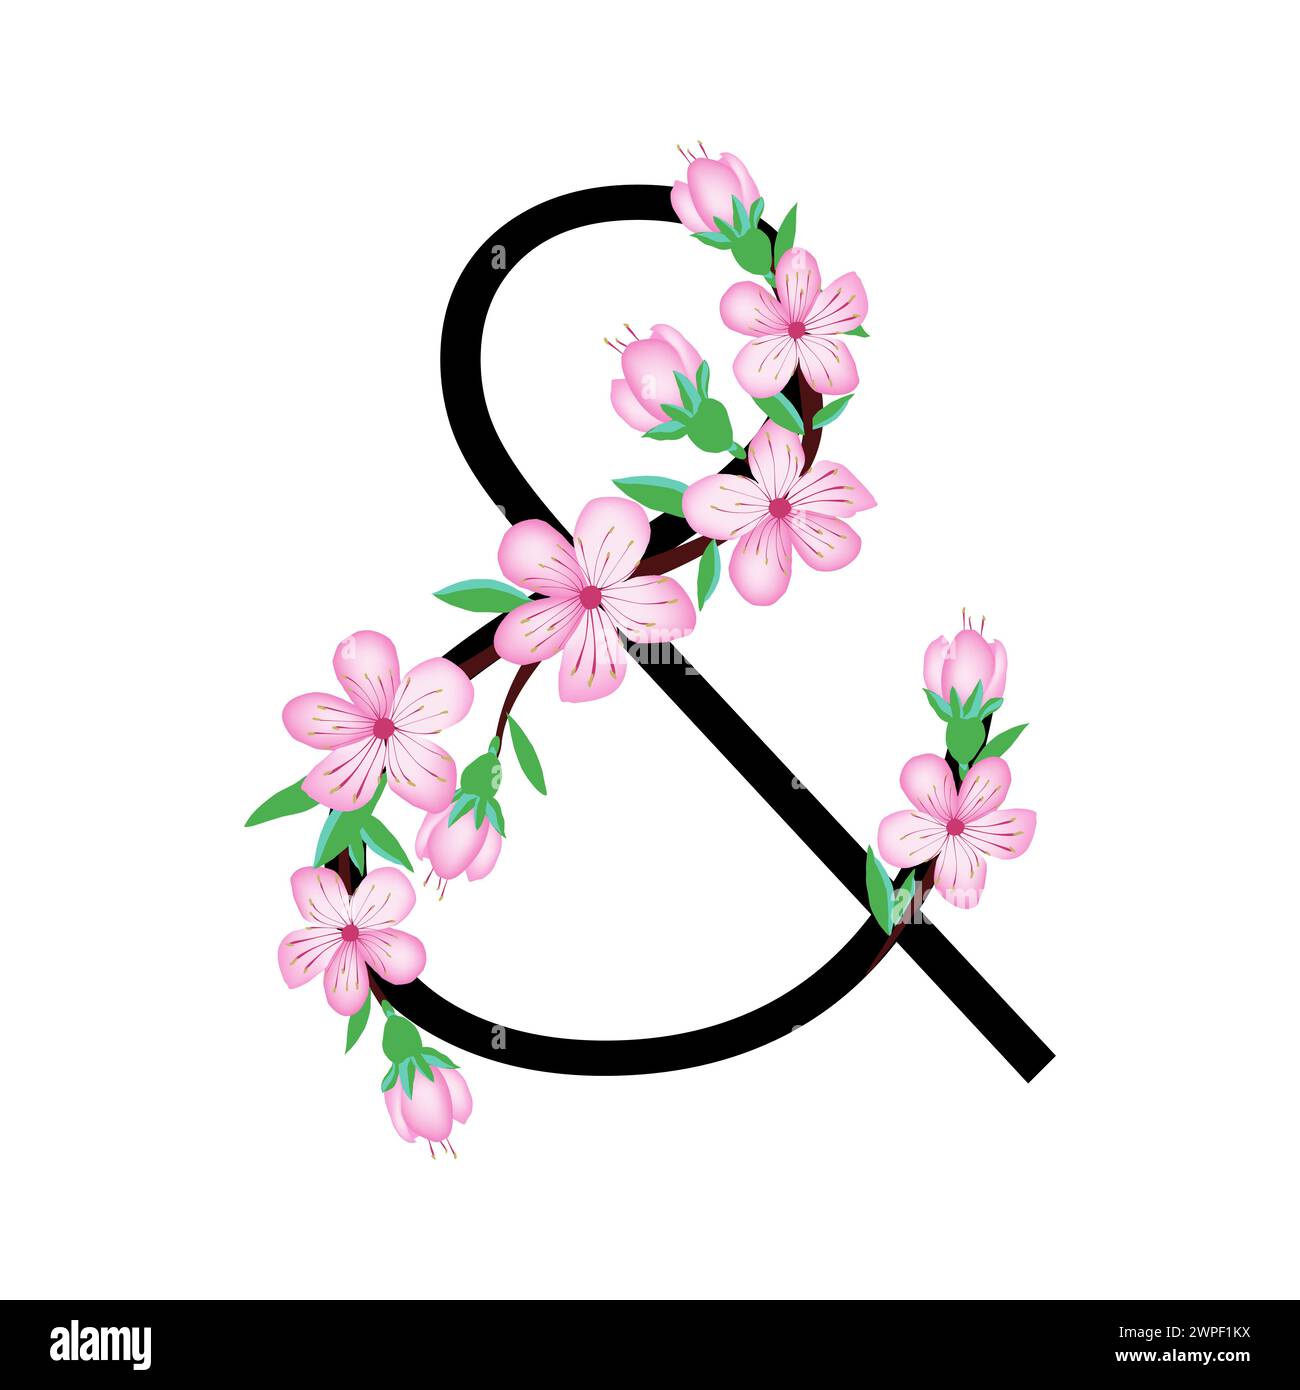 Sakura Blossom rose petite fleur alphabet pour la conception de carte ou invitation. Illustrations vectorielles, isolées sur fond blanc pour la fleur de cerise de printemps Illustration de Vecteur